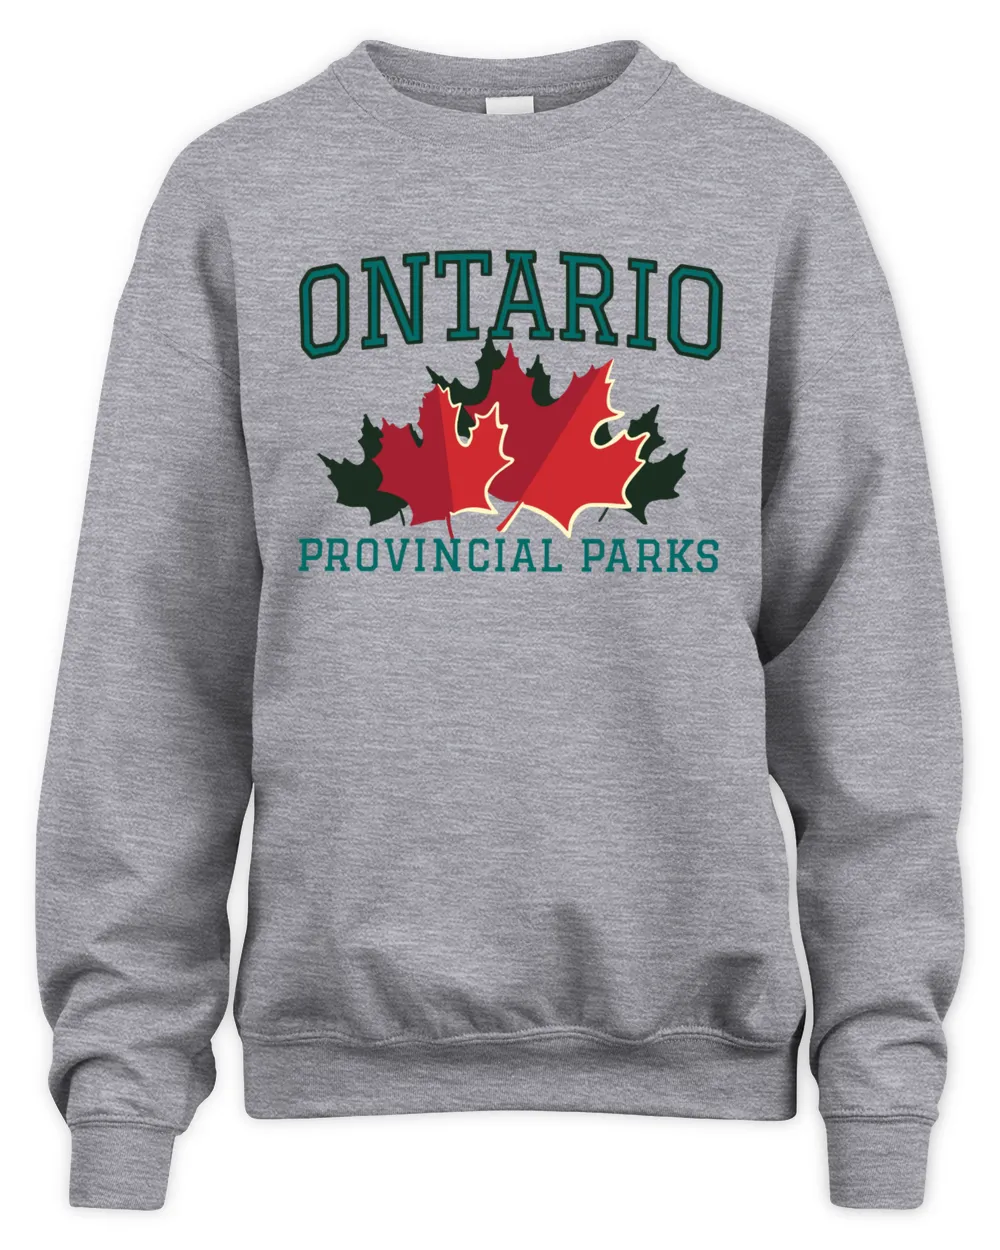 Vintage Maple Leafs Sweatshirt